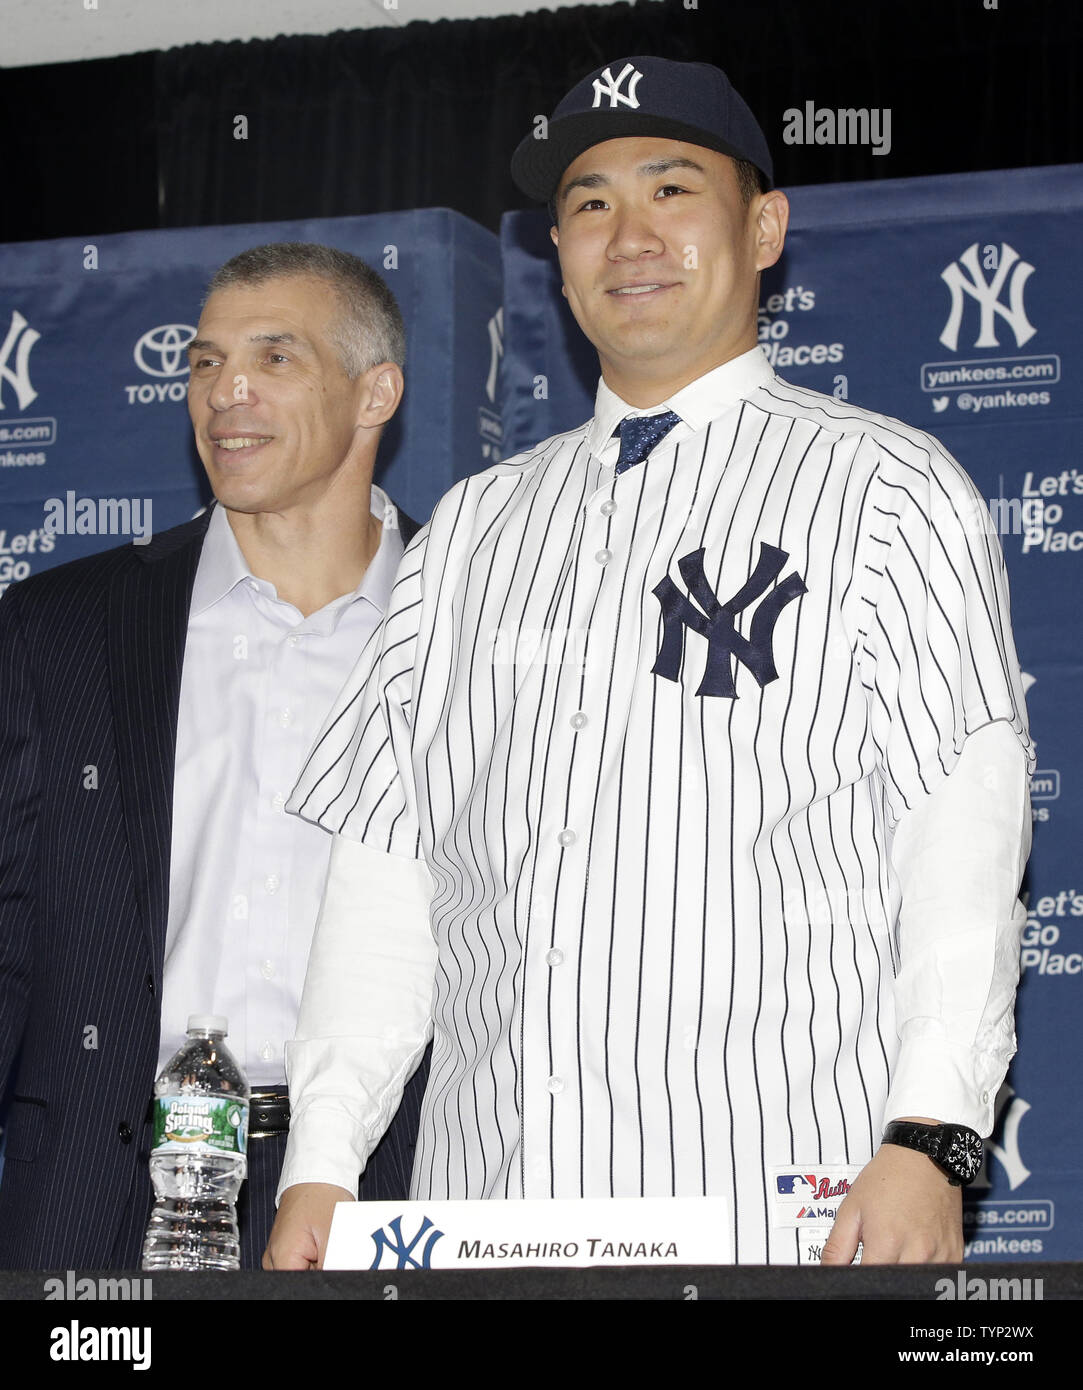 New York Yankees Manager Joe Girardi stands with Masahiro Tanaka